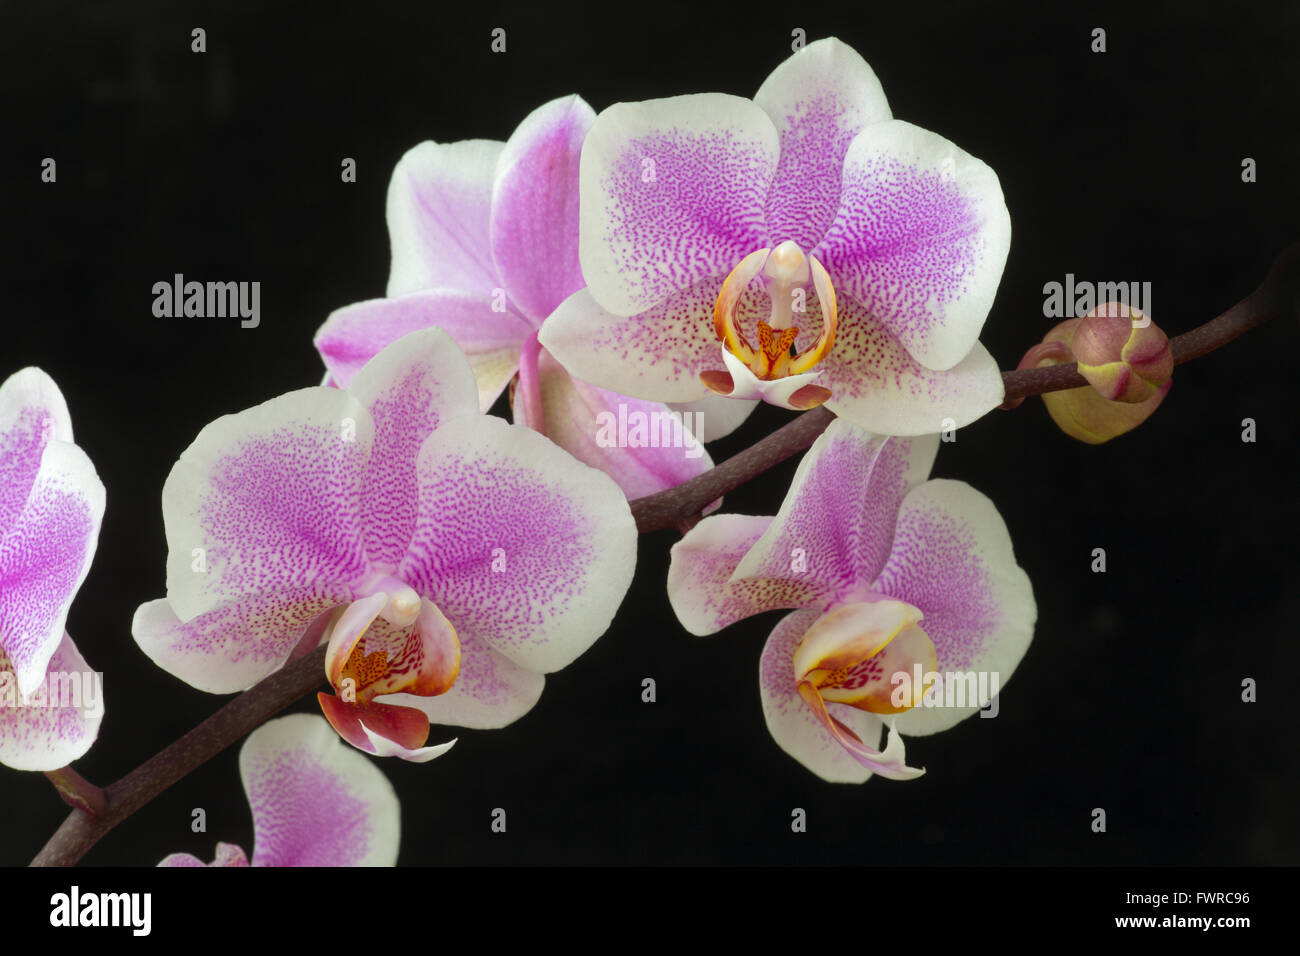 Phalaenopsis orchid (Phalaenopsis sp) close-up on black background Stock Photo